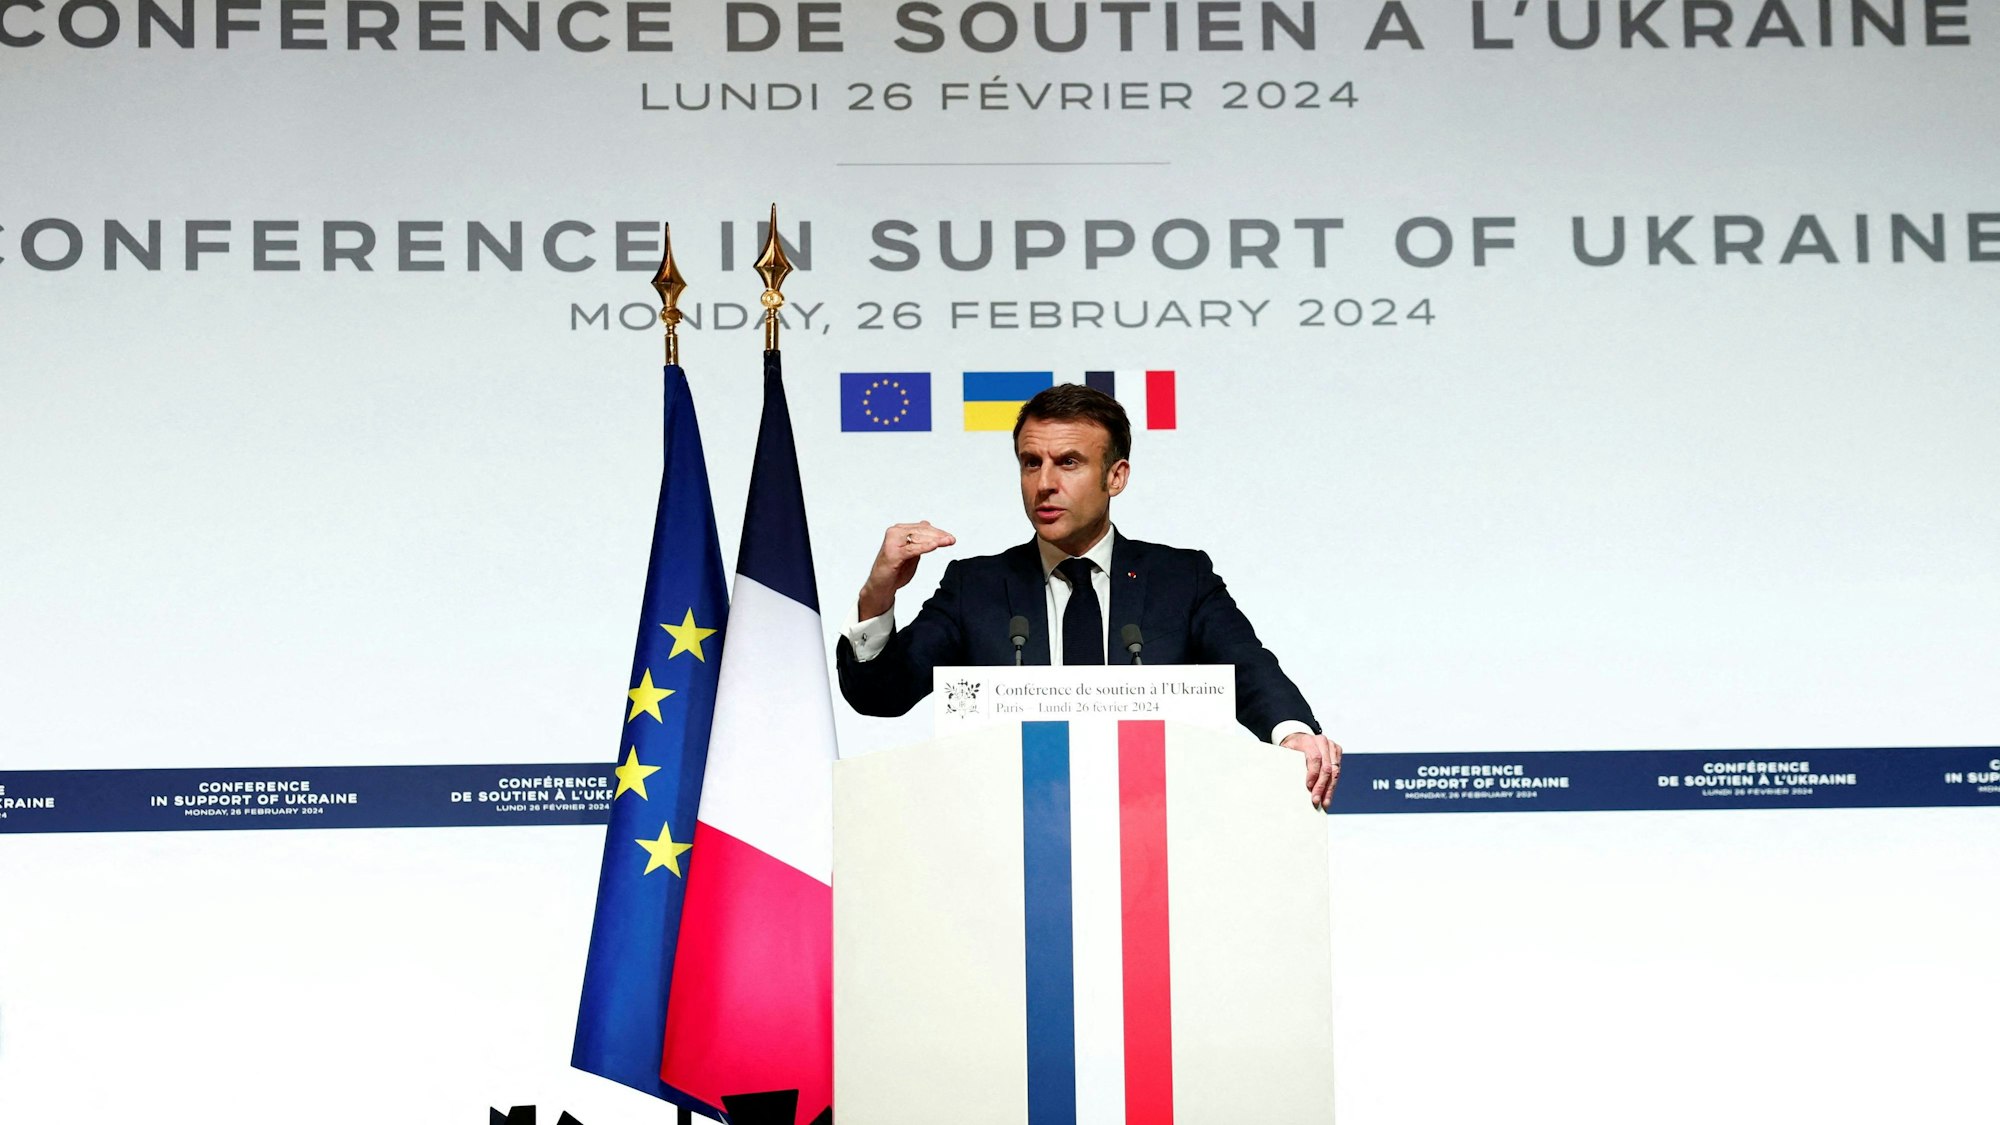 Der französische Präsident Emmanuel Macron hat sich während einer Pressekonferenz zum Abschluss der internationalen Konferenz zur Stärkung der westlichen Unterstützung für die Ukraine ausgesprochen.